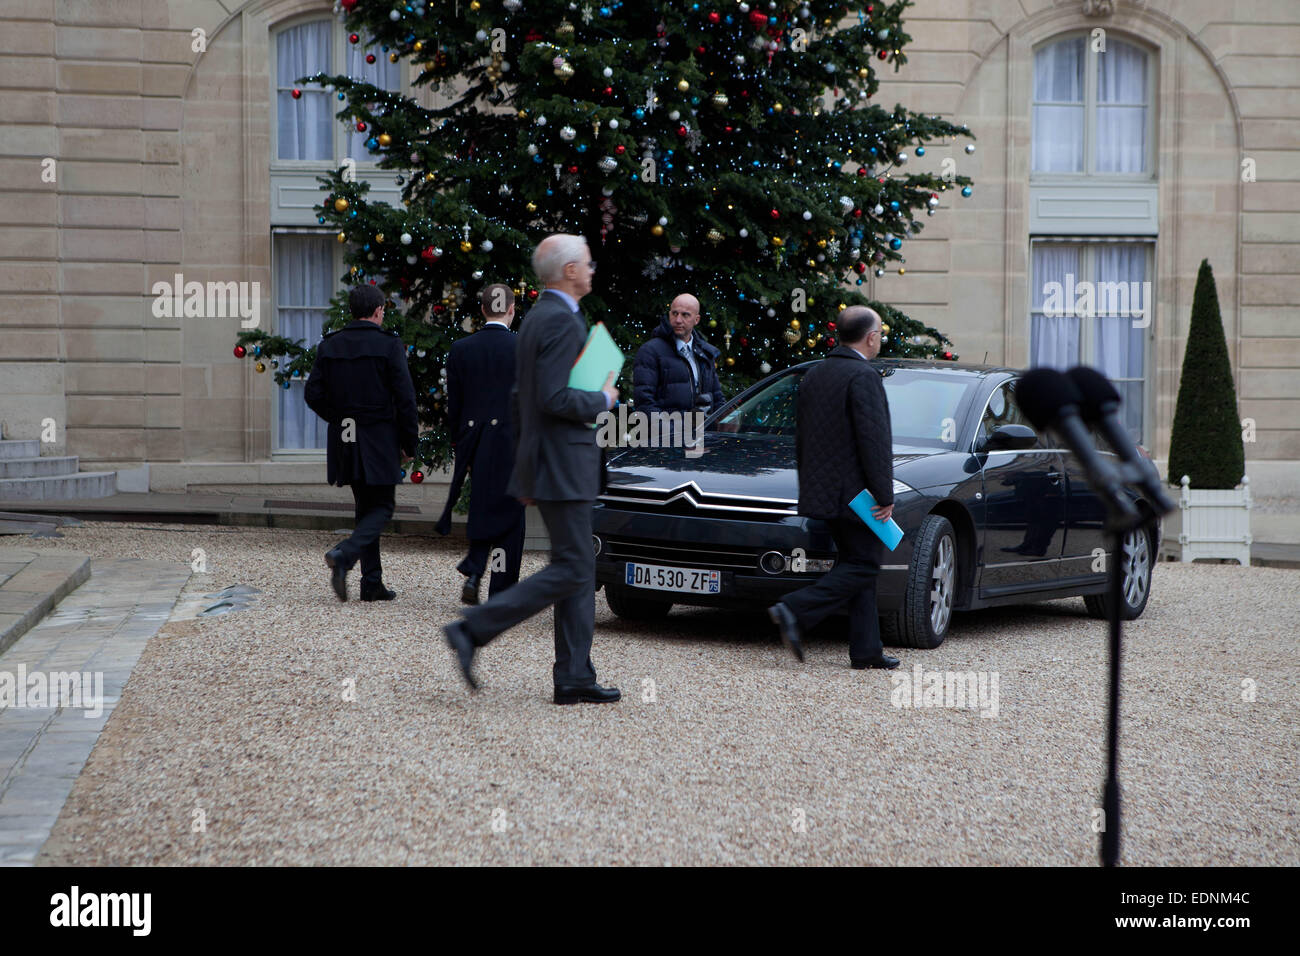 Elysee, Paris, France, Bernard Cazeneuve, Ministre de l'intérieur, parle après la fusillade meurtrière à Paris, qui a eu lieu le matin 07/01/2015 à l'office de 'Charlie Hebdo' Magazine, 12 victimes, il a confirmé 3 tireurs possible. Banque D'Images